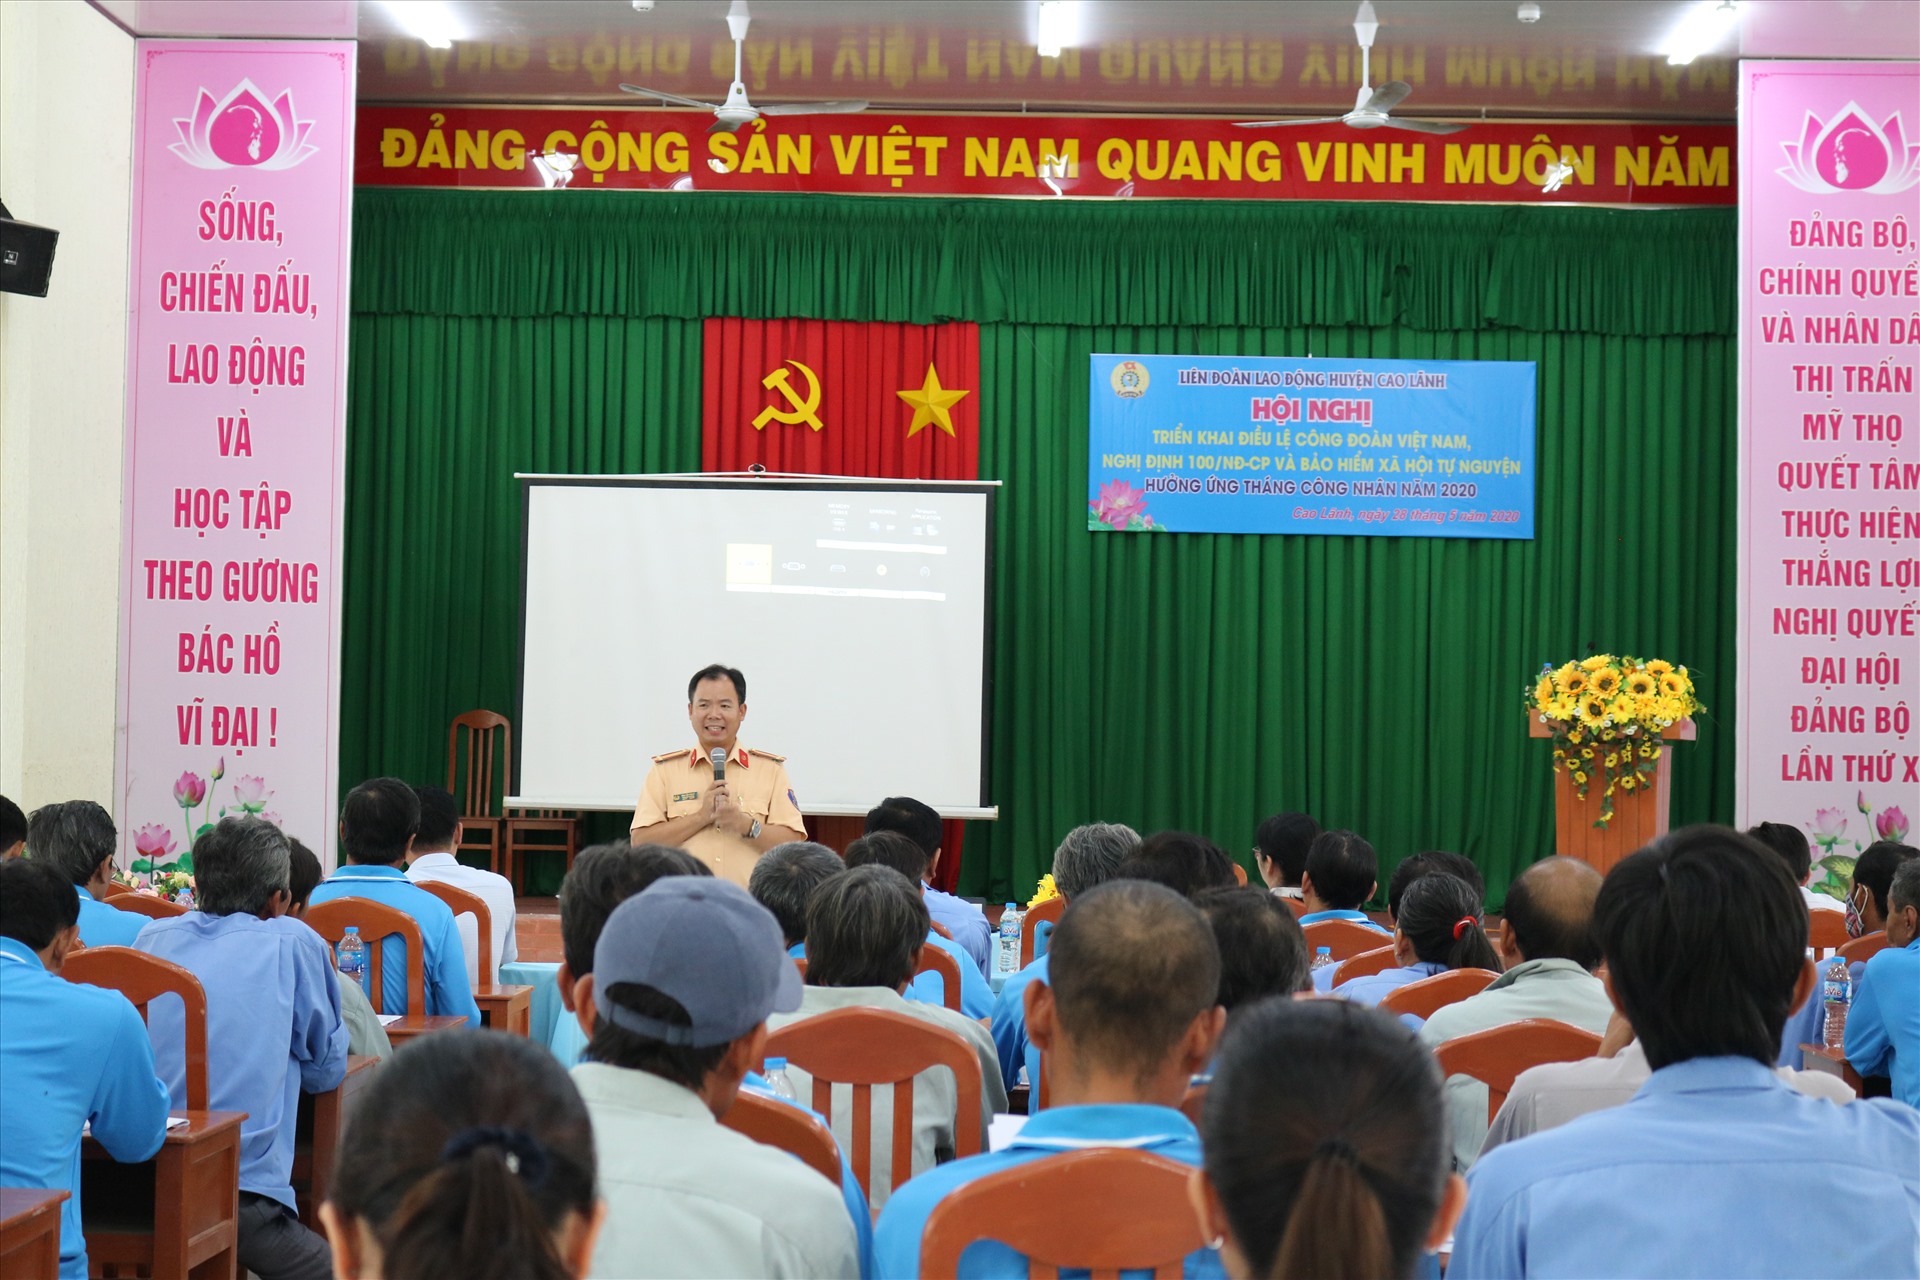 Đồng chí Nguyễn Văn Út - Đội phó đội CSGT đường bộ đường sắt công an huyện Cao Lãnh tuyên truyền Nghị định 100/2019/NĐ-CP.  Ảnh: HL